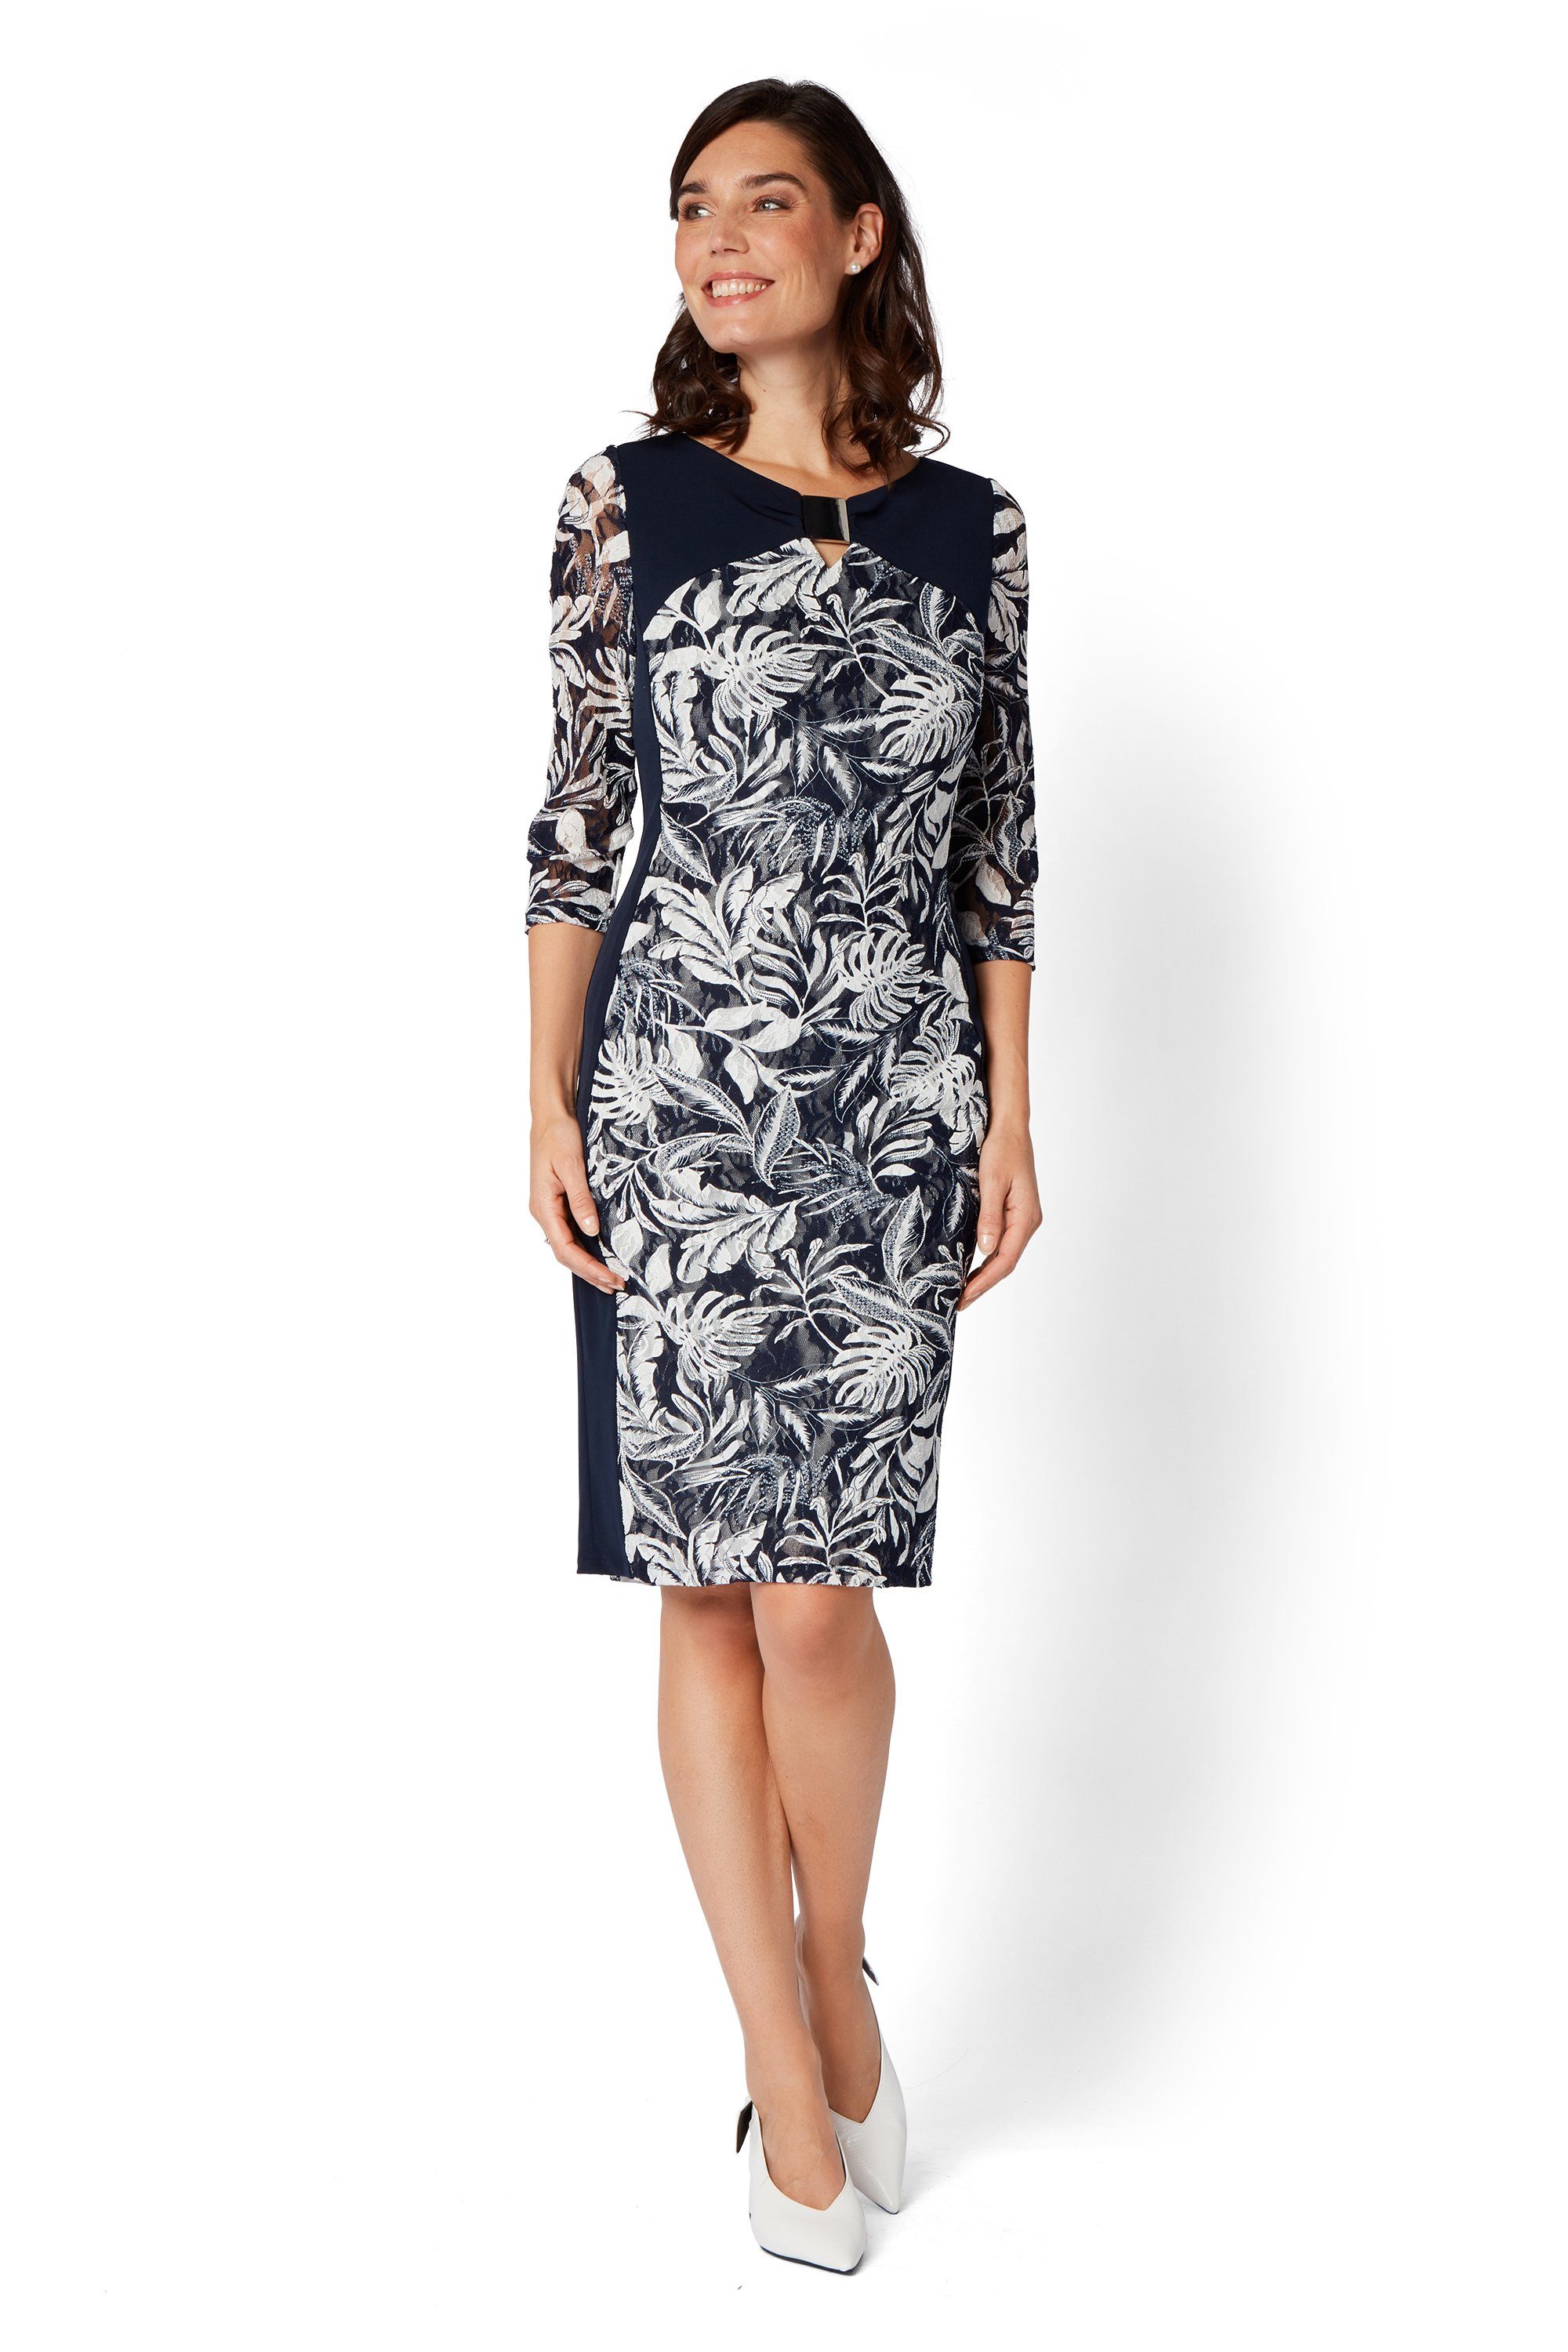 HERMANN LANGE Collection Abendkleid Spitzenkleid mit Spange - elegant | Abendkleider